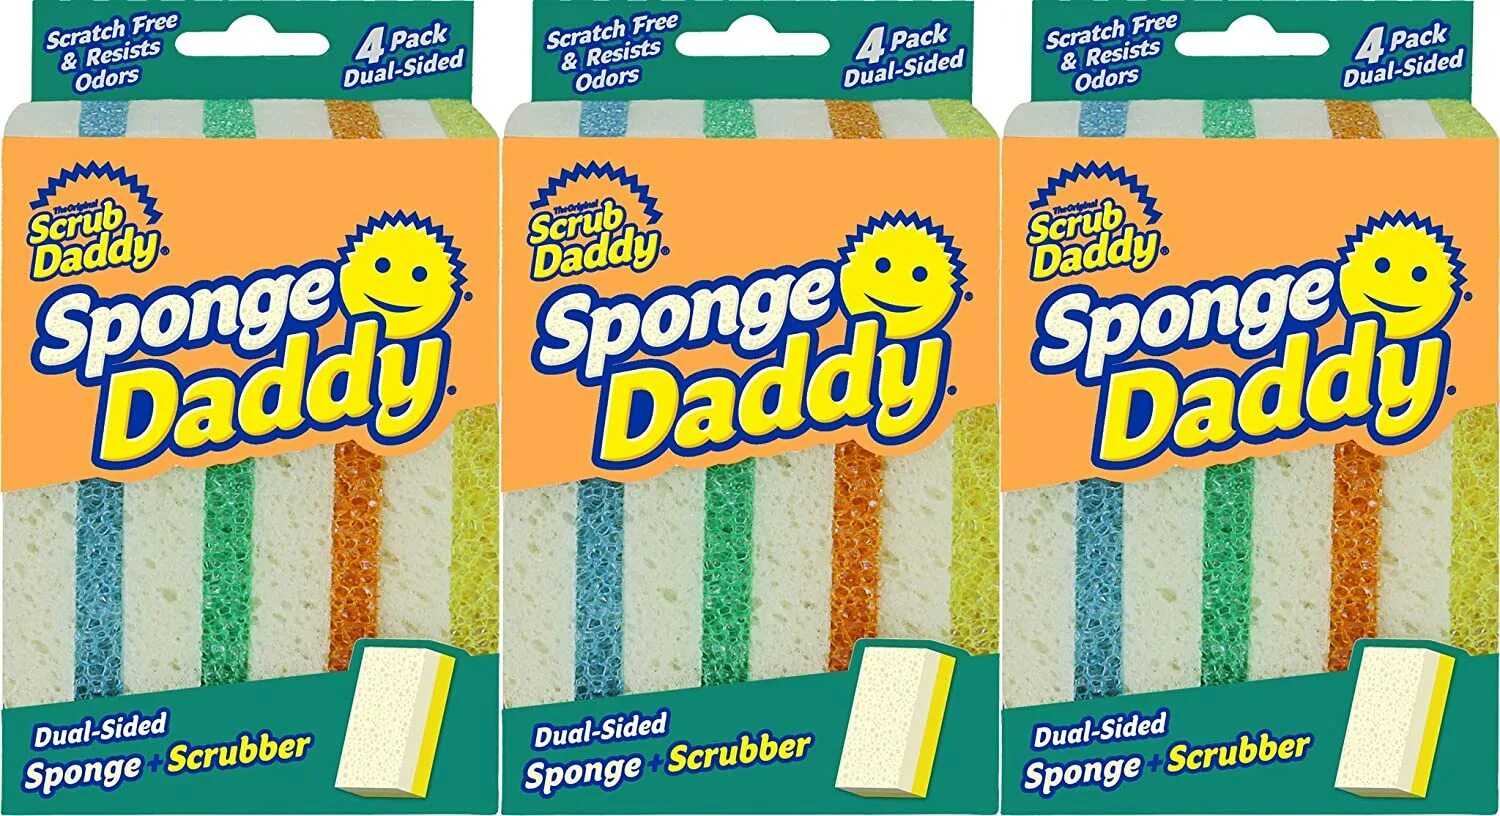 Sponge перевод. Scrub Daddy губка. Губки для мытья посуды Scrub Daddy. Scrub Daddy Sponge. Sponges and Scrubbers.